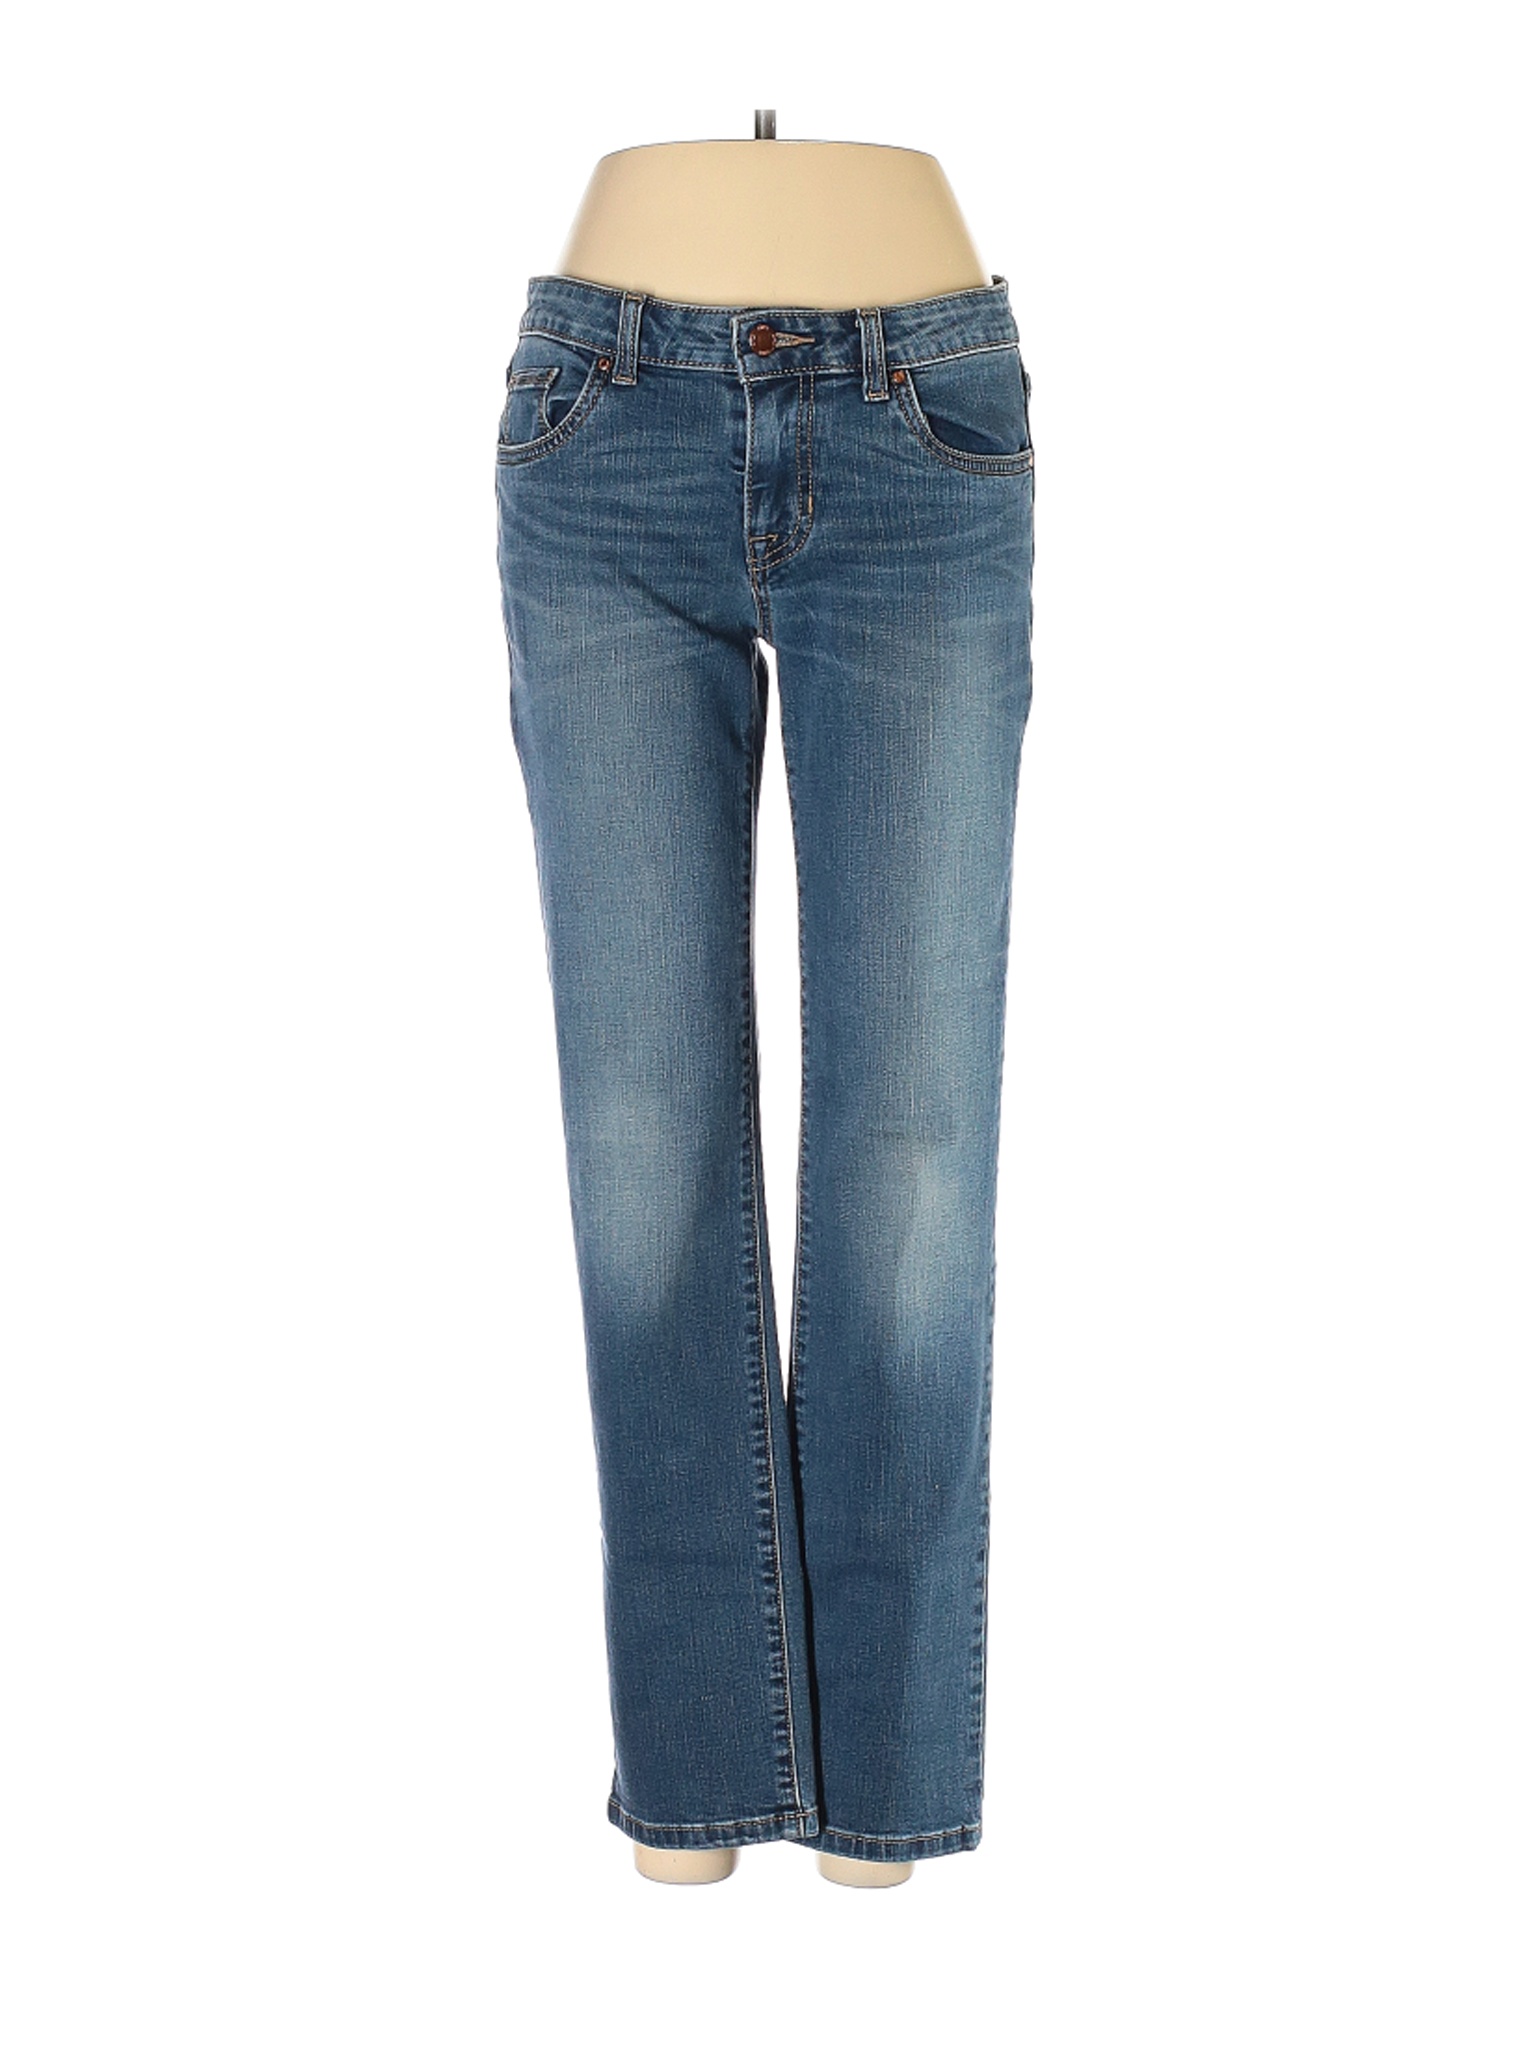 Apt. 9 Women Blue Jeans 4 | eBay